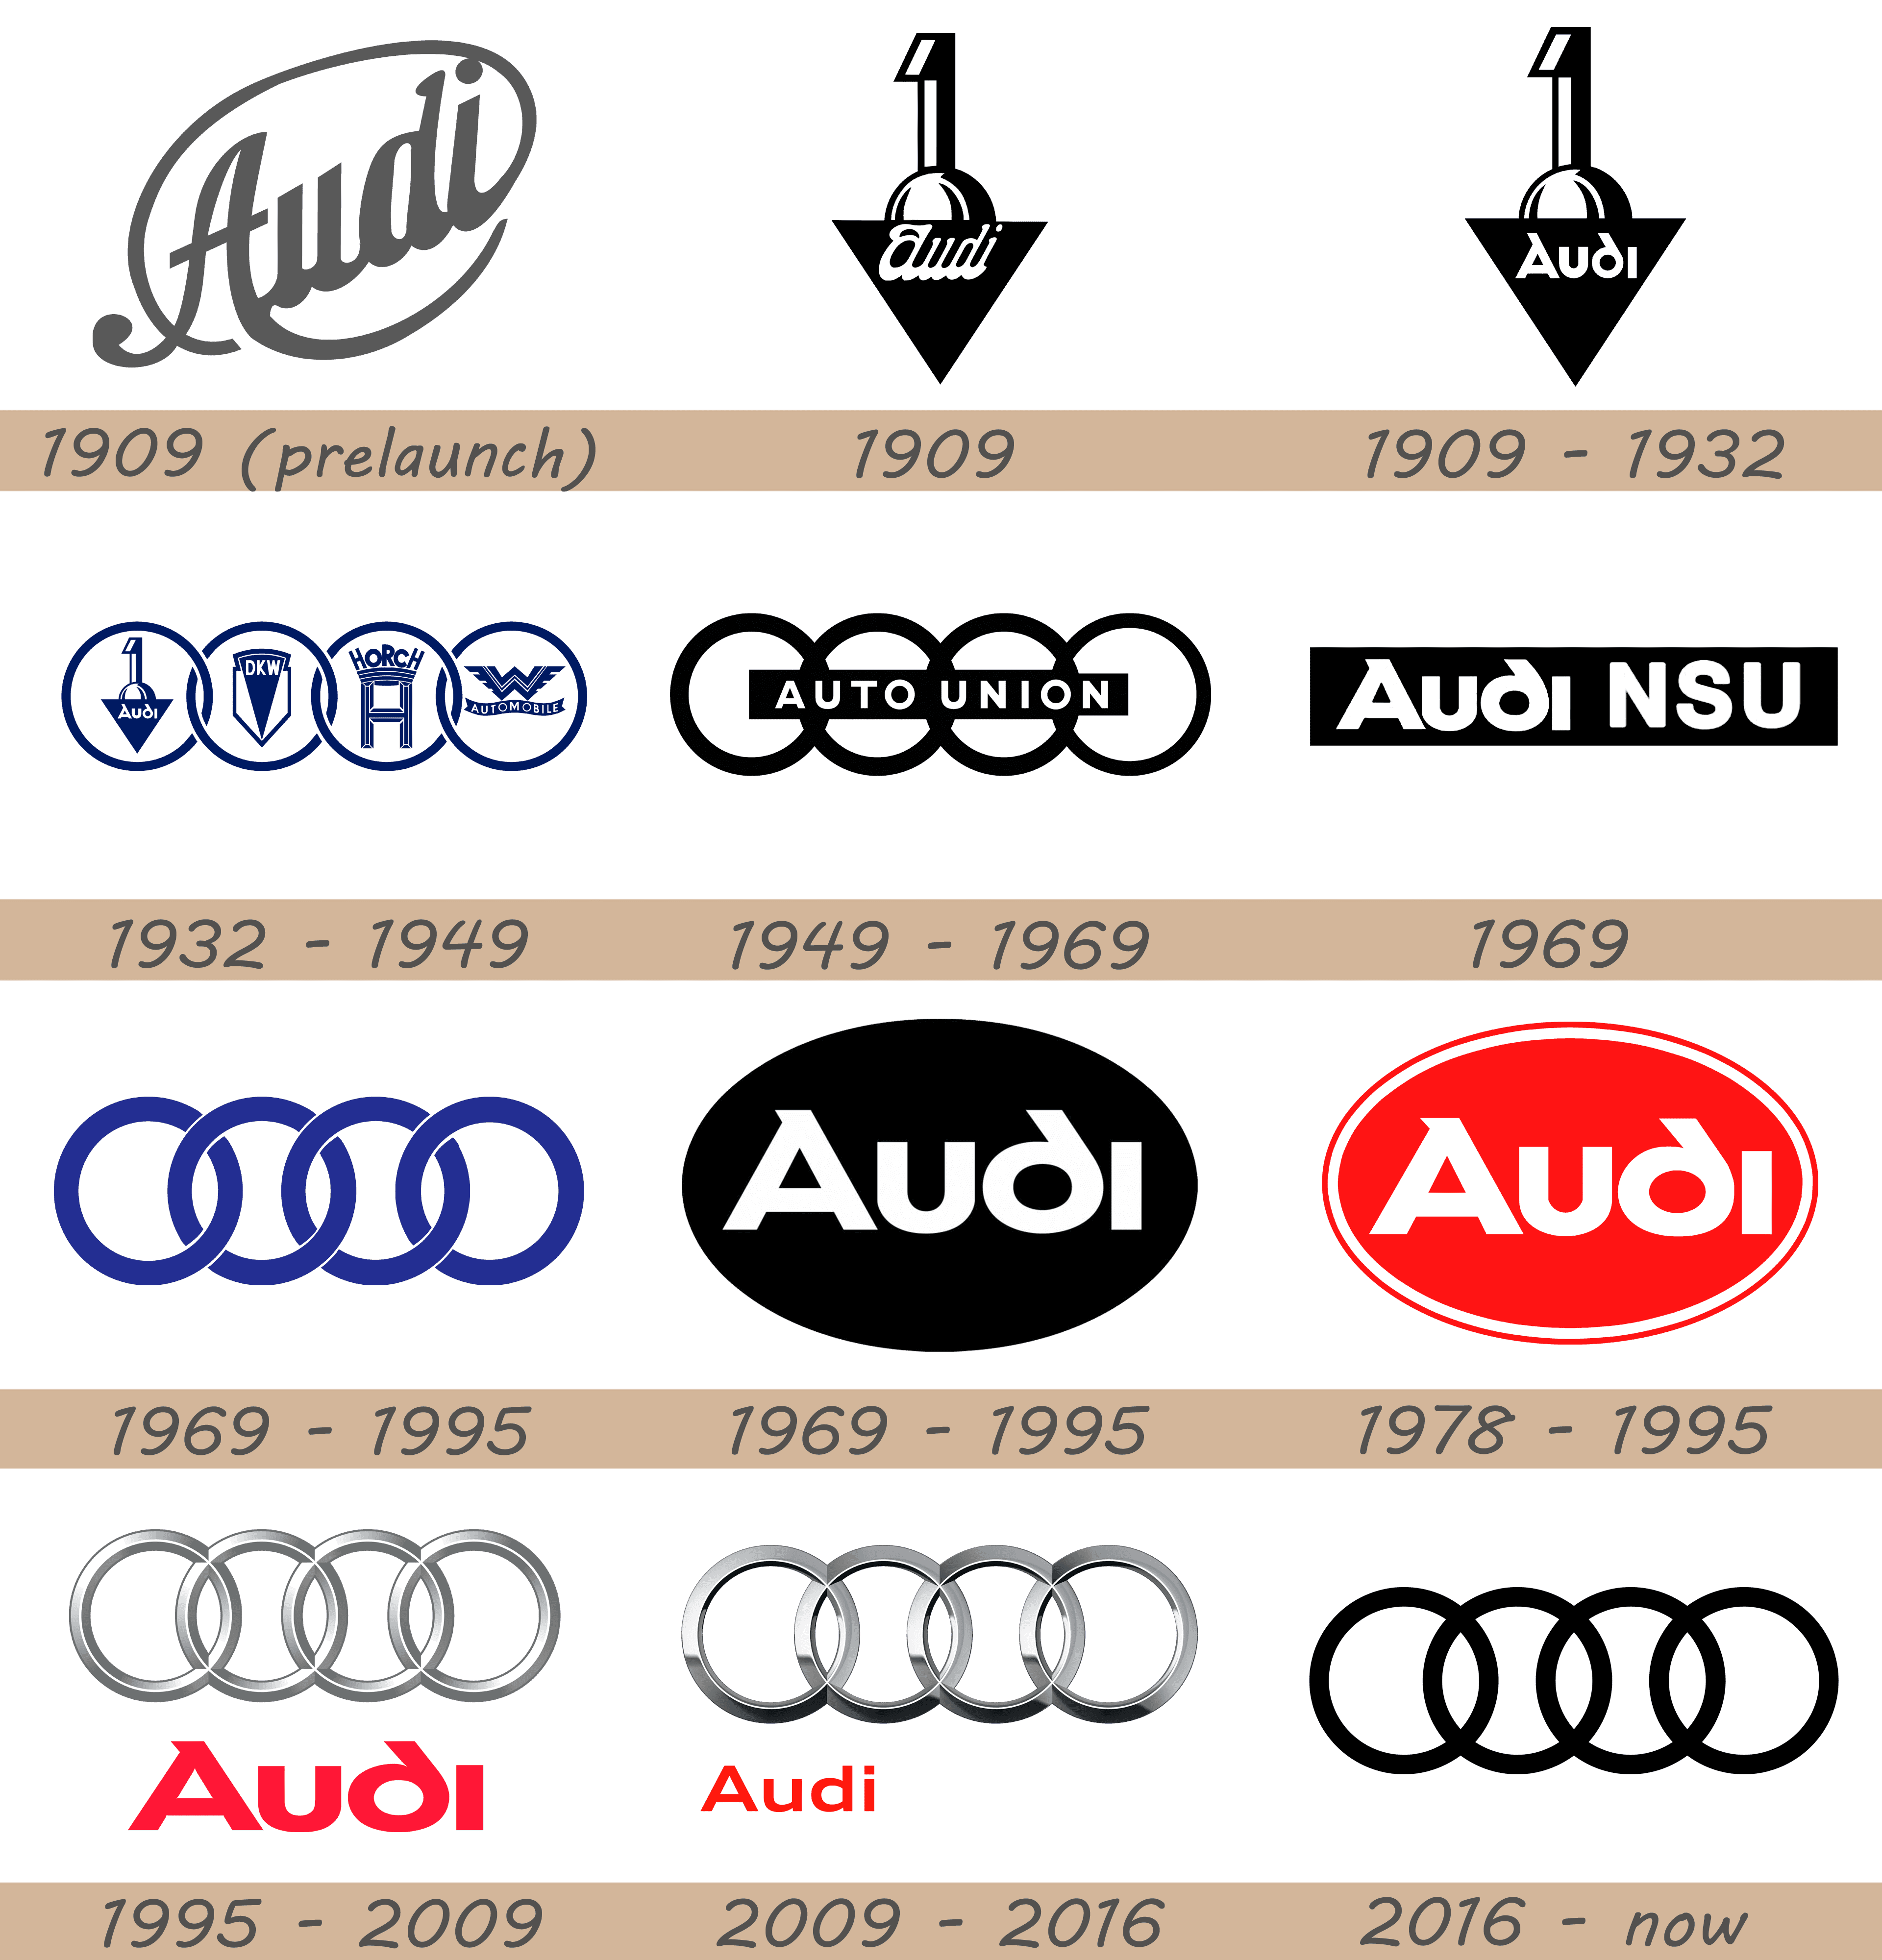 logo Audi  Audi logo, ? logo, Logos meaning